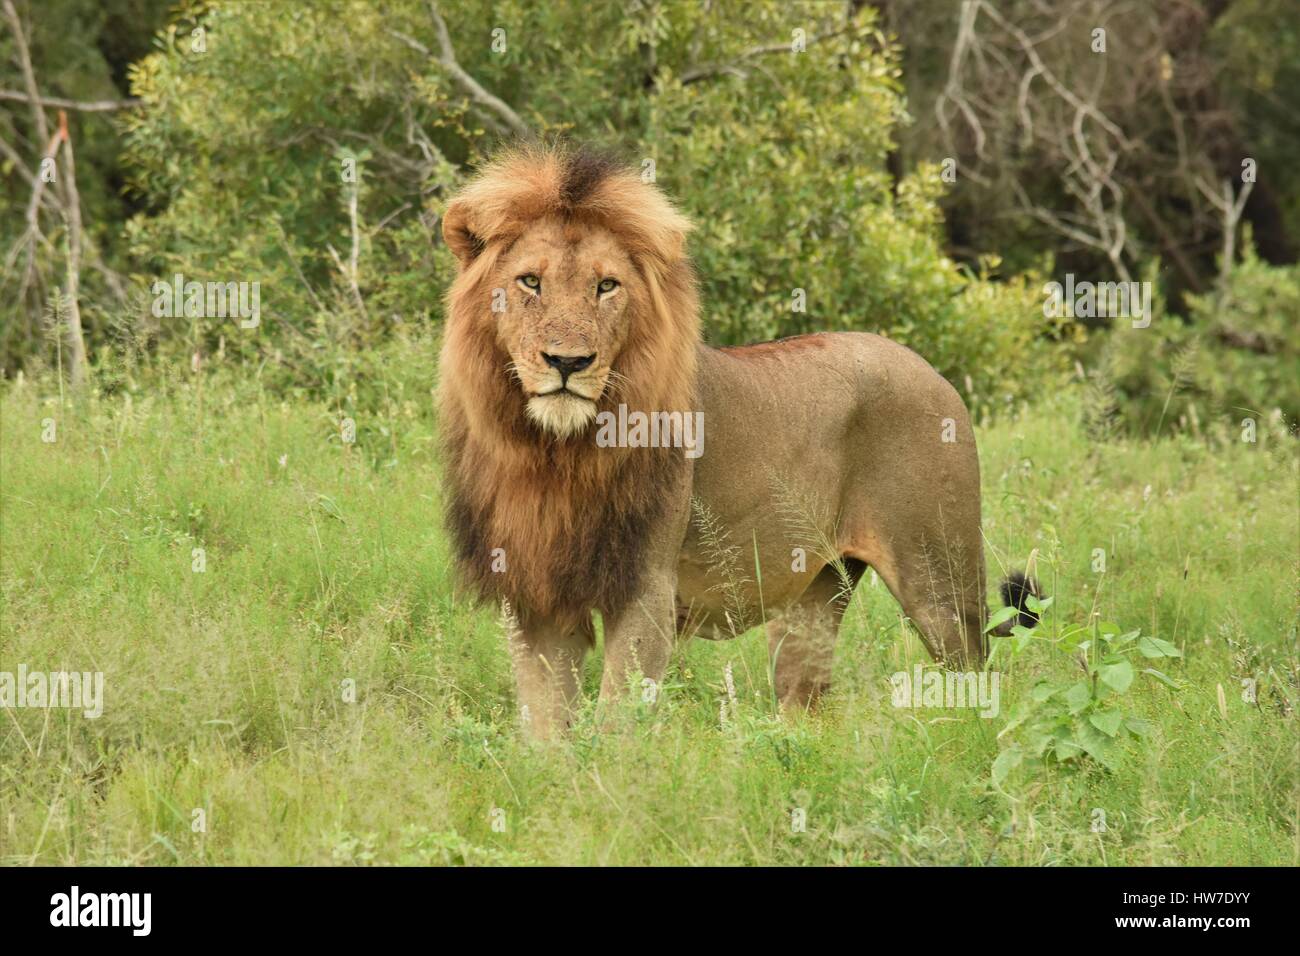 Homme Lion debout dans l'herbe Banque D'Images